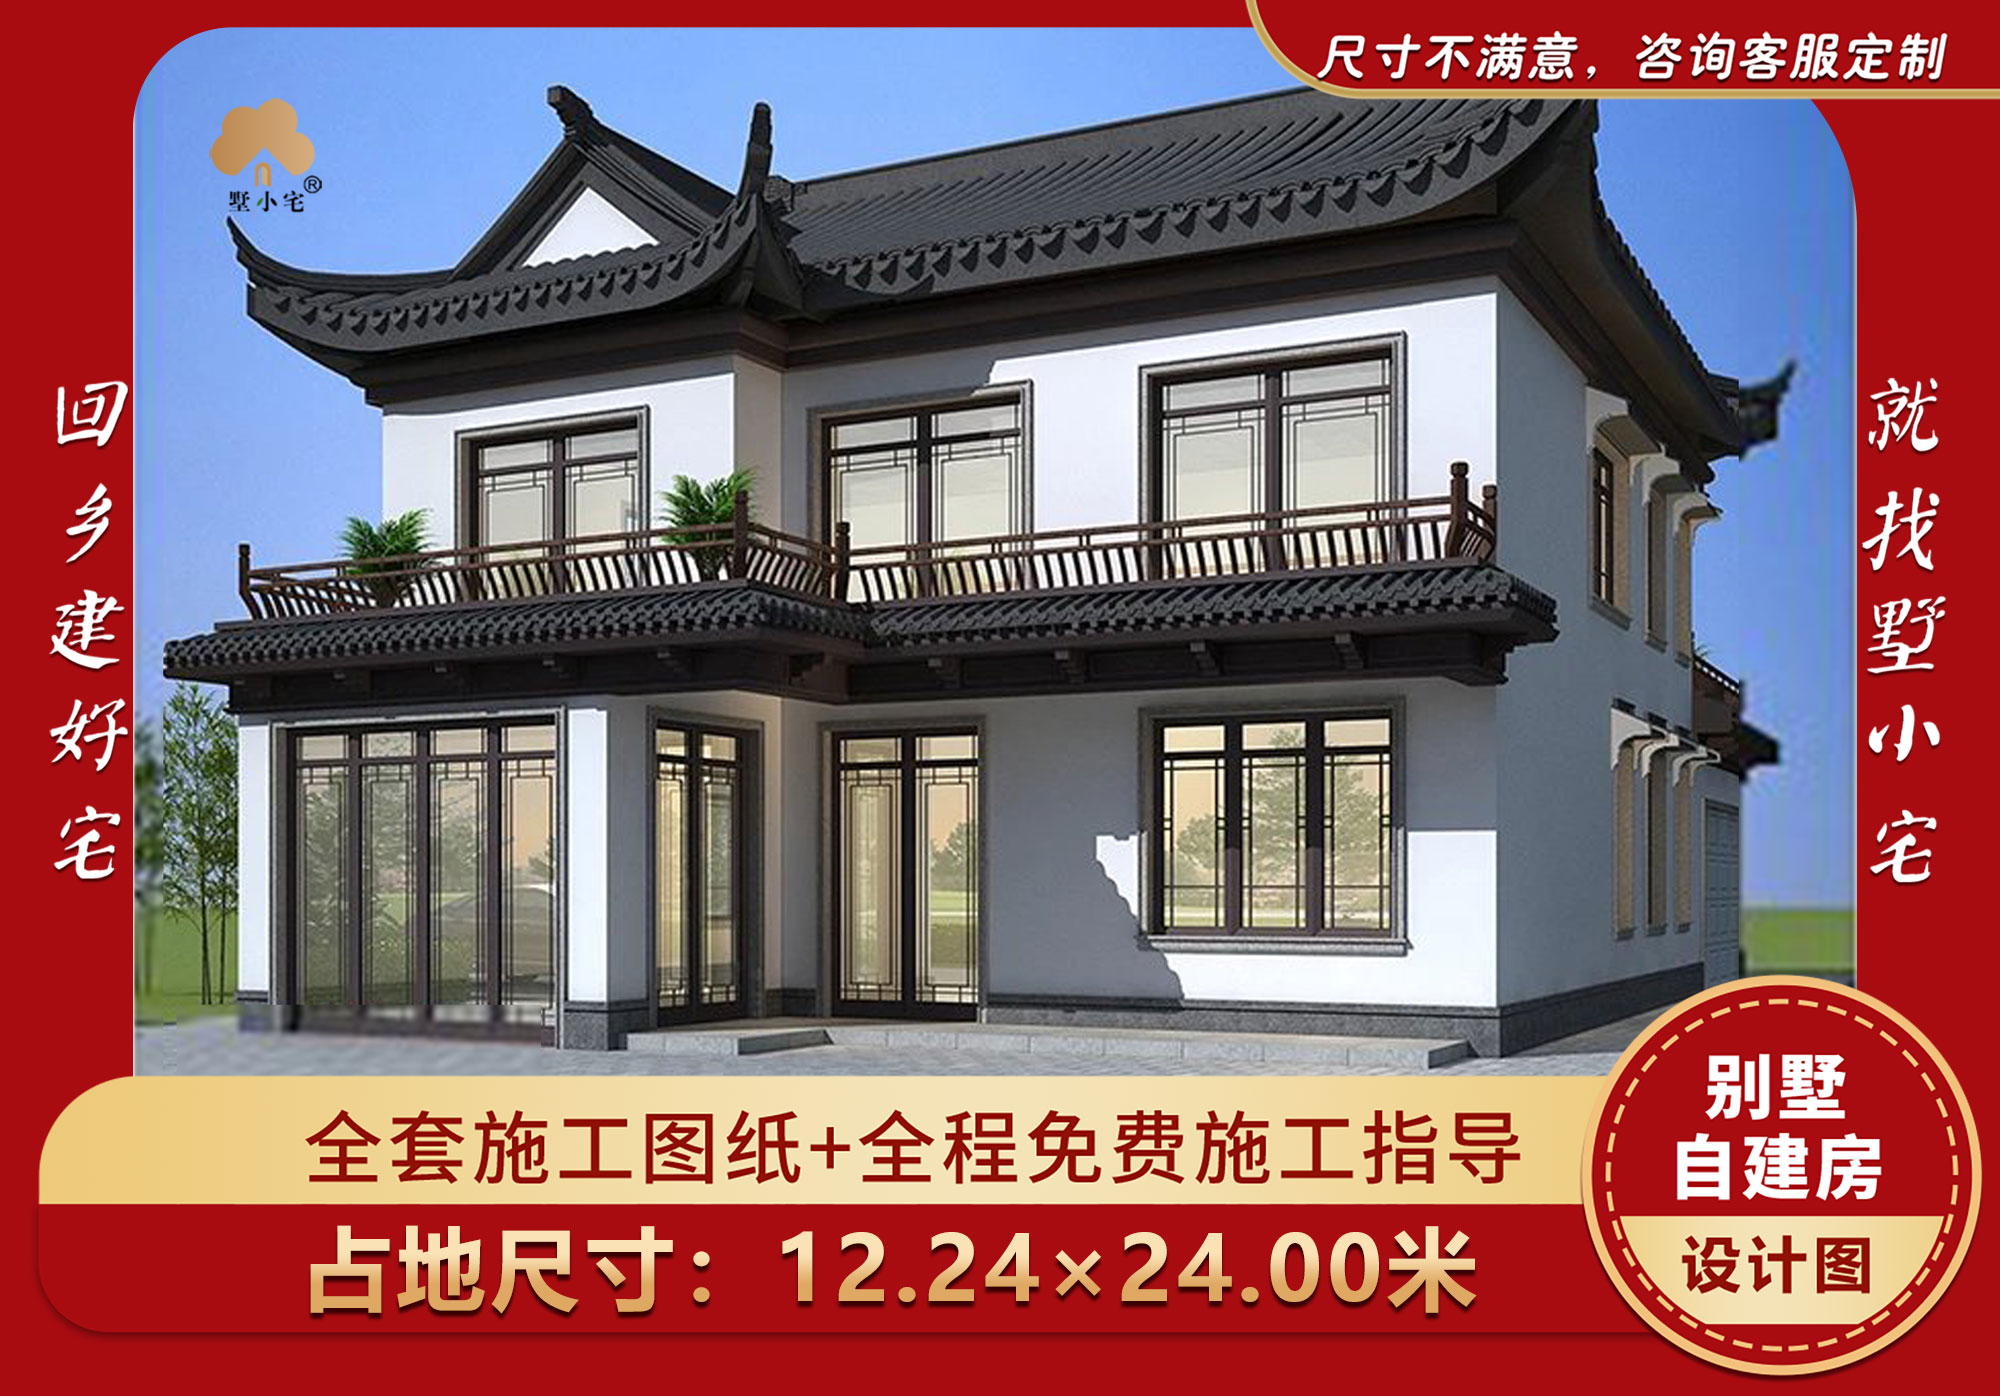 【23061096】中式风格农村二层别墅设计效果图，连廊衔接庭院前后。12.24×24.00米